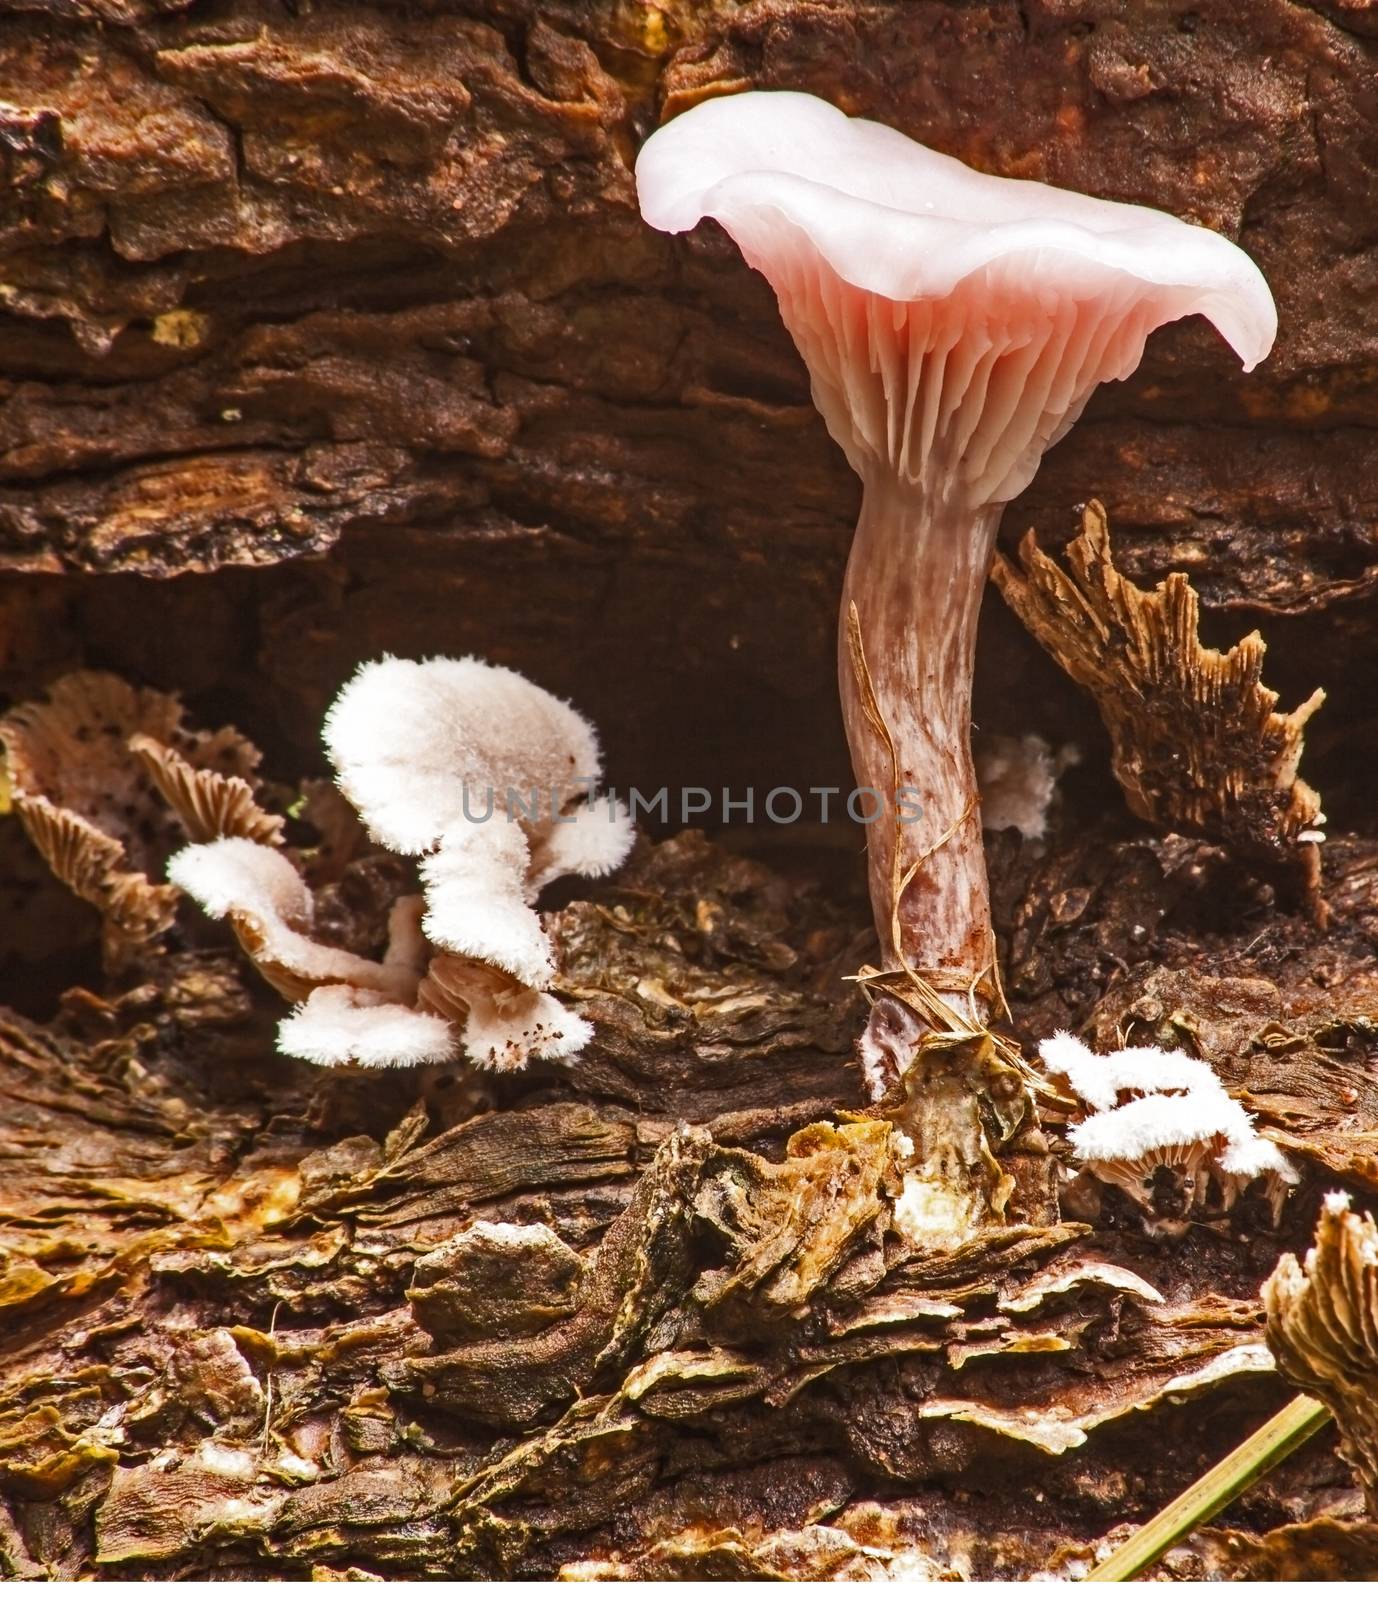 Wild mushroom 8589 by kobus_peche